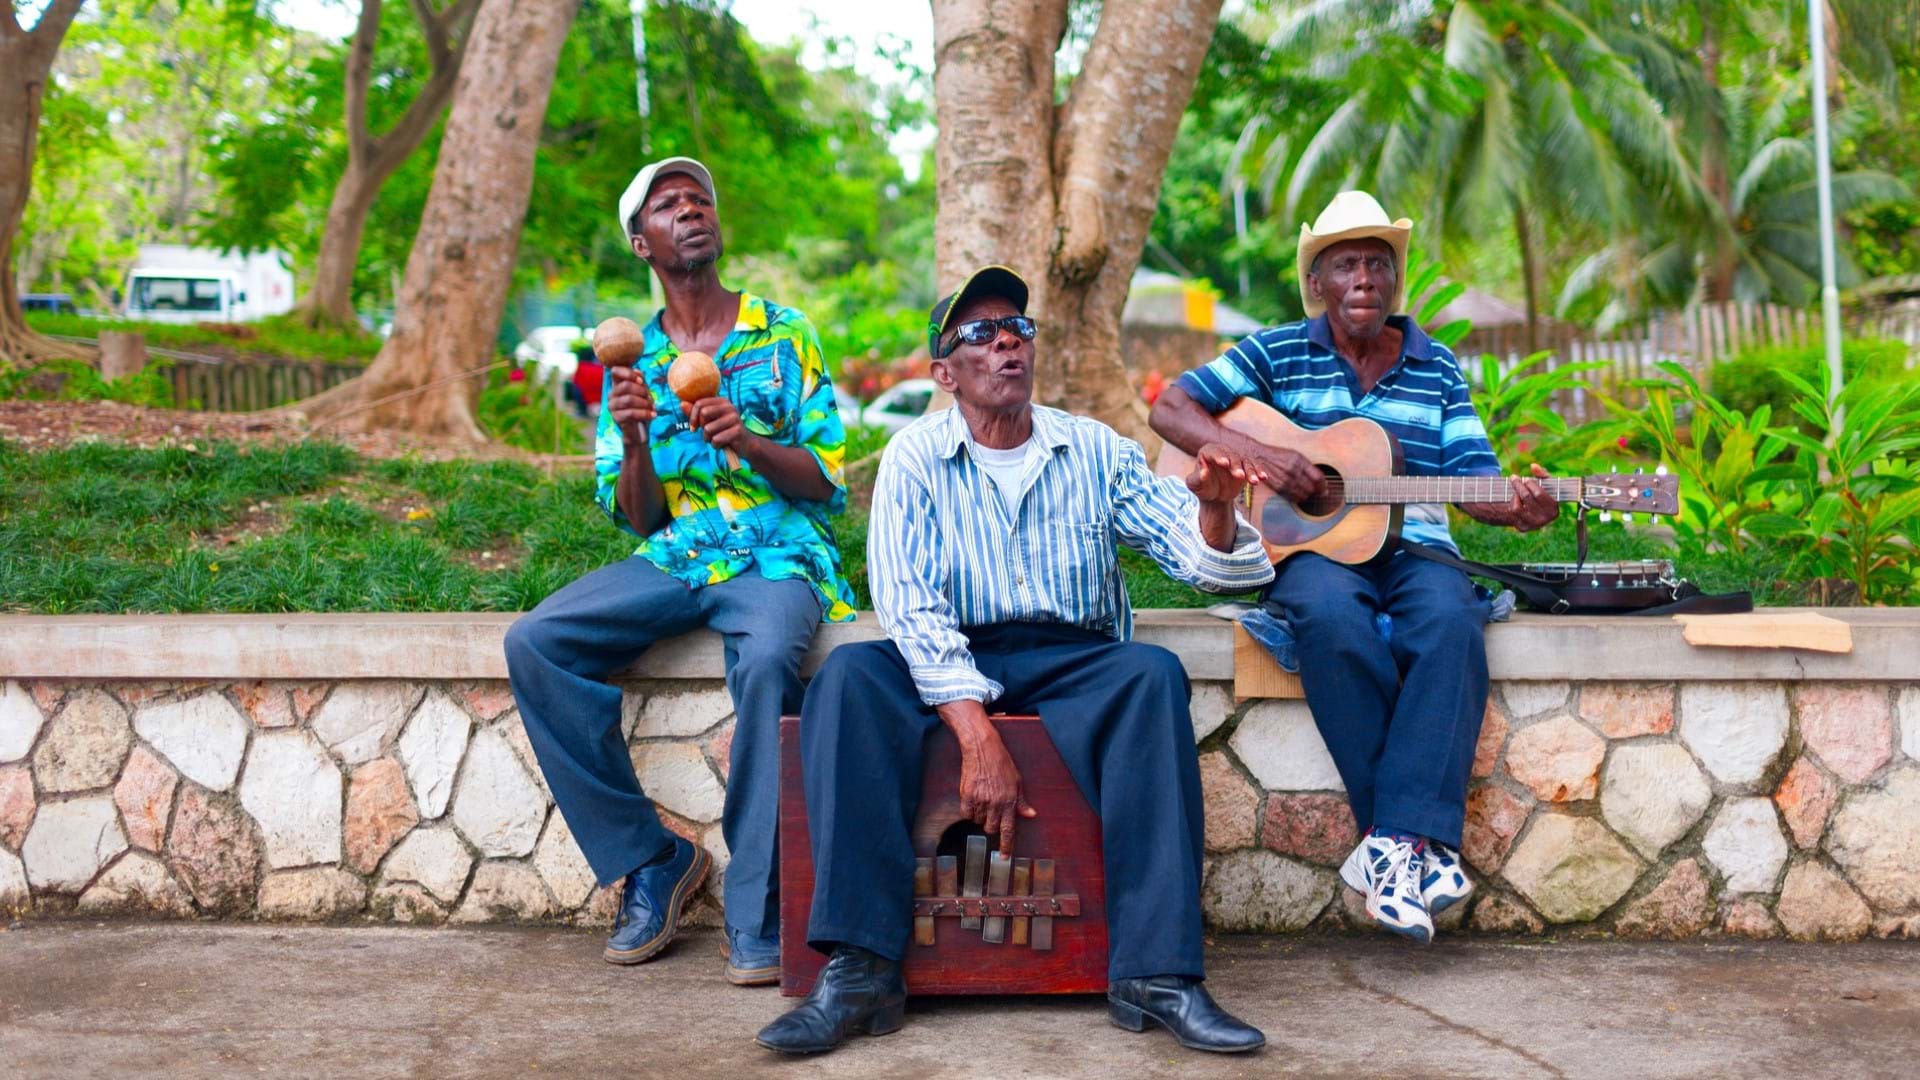 Jamajka Putovanje - Ulični svirači na ulicama koji sviraju letino muziku. Najveća atrakcija turista.